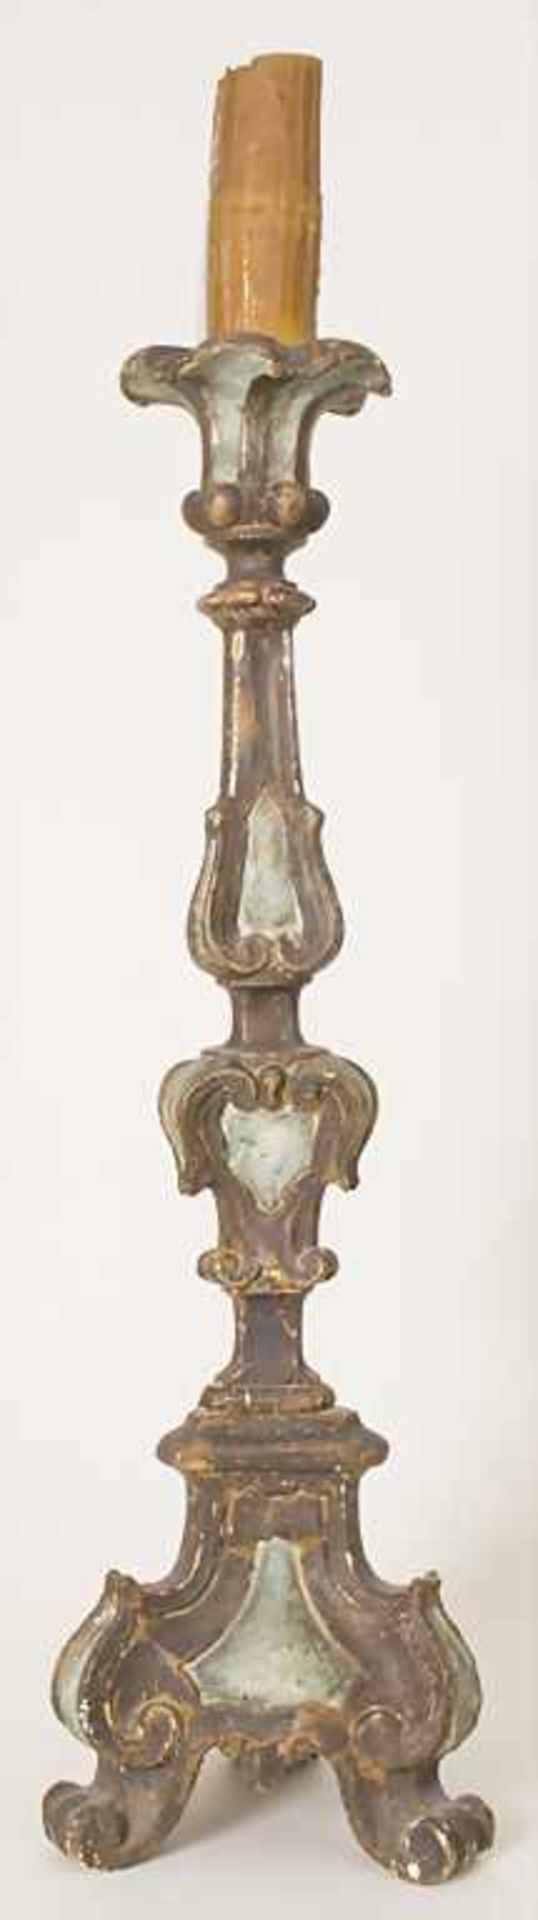 Altarleuchter / An altar candlestick, süddeutsch 18. Jh.Material: Holz, geschnitzt, farbig - Bild 4 aus 13